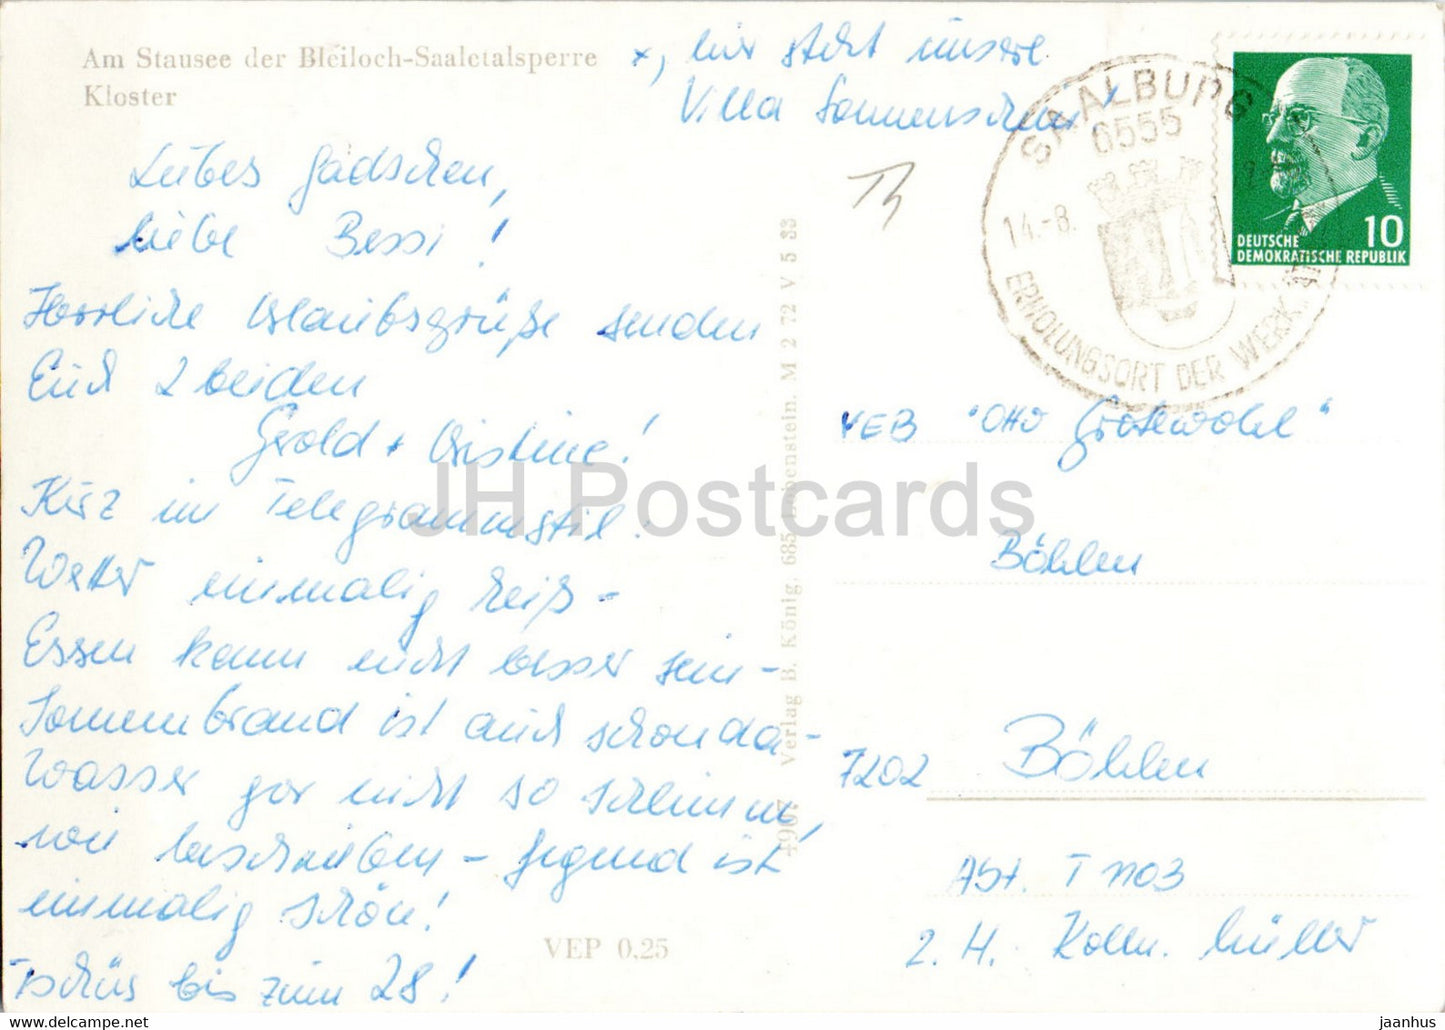 Am Stausee der Bleiloch Saaletalsperre - Kloster - carte postale ancienne - Allemagne DDR - utilisé